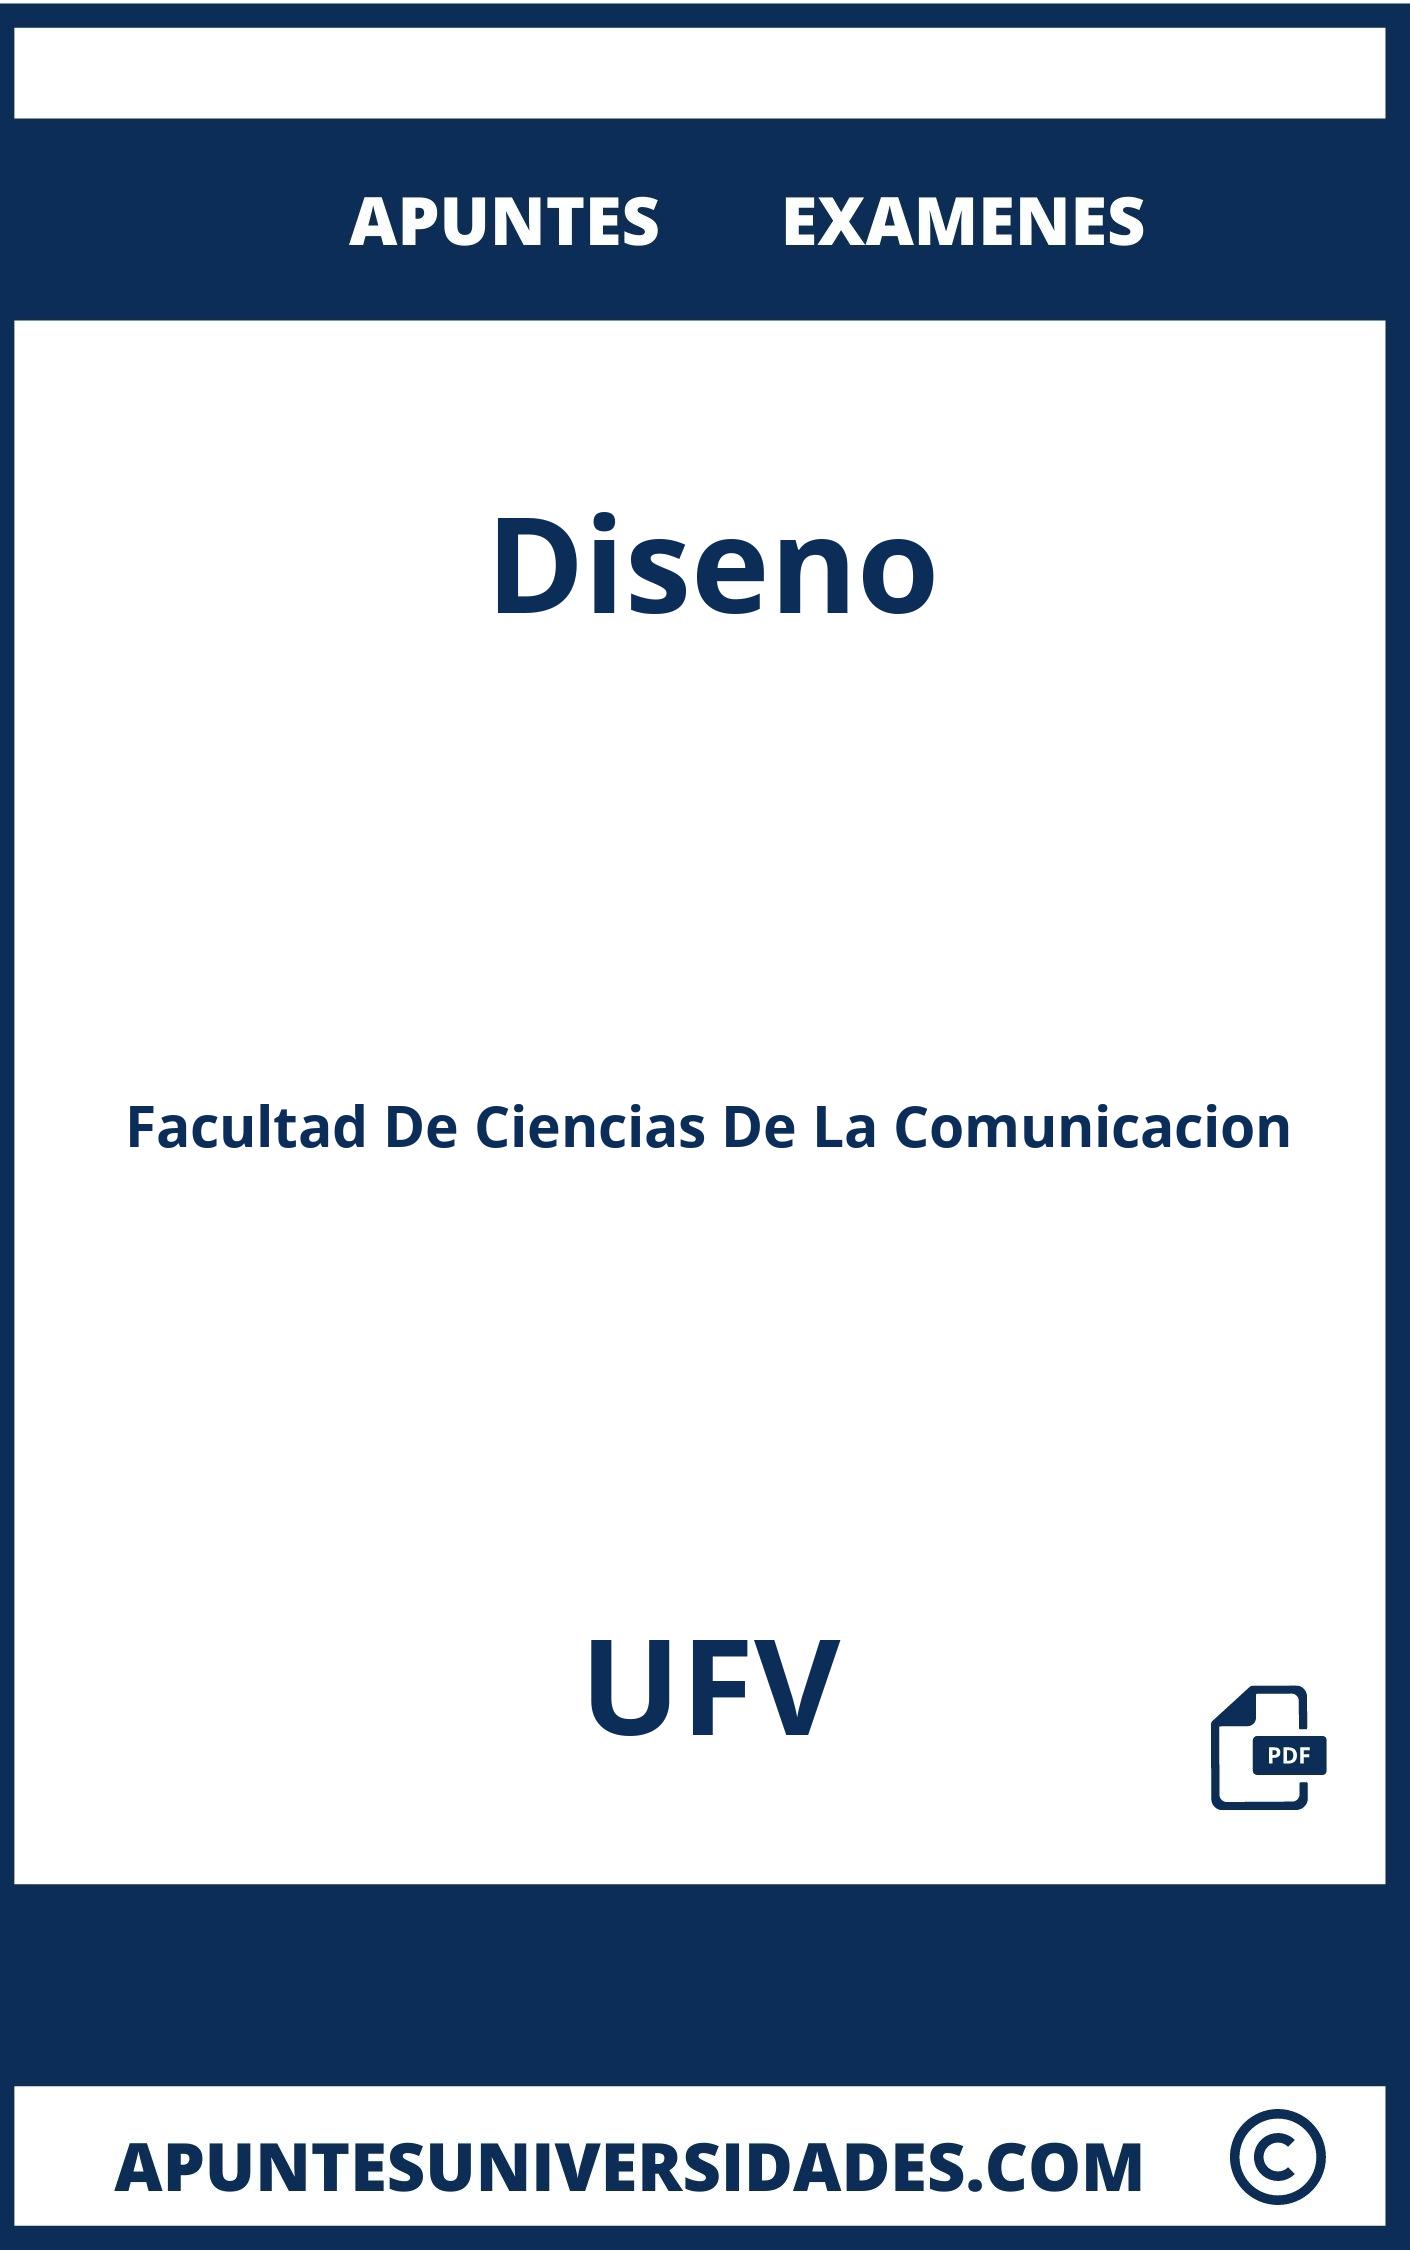 Examenes y Apuntes de Diseno UFV